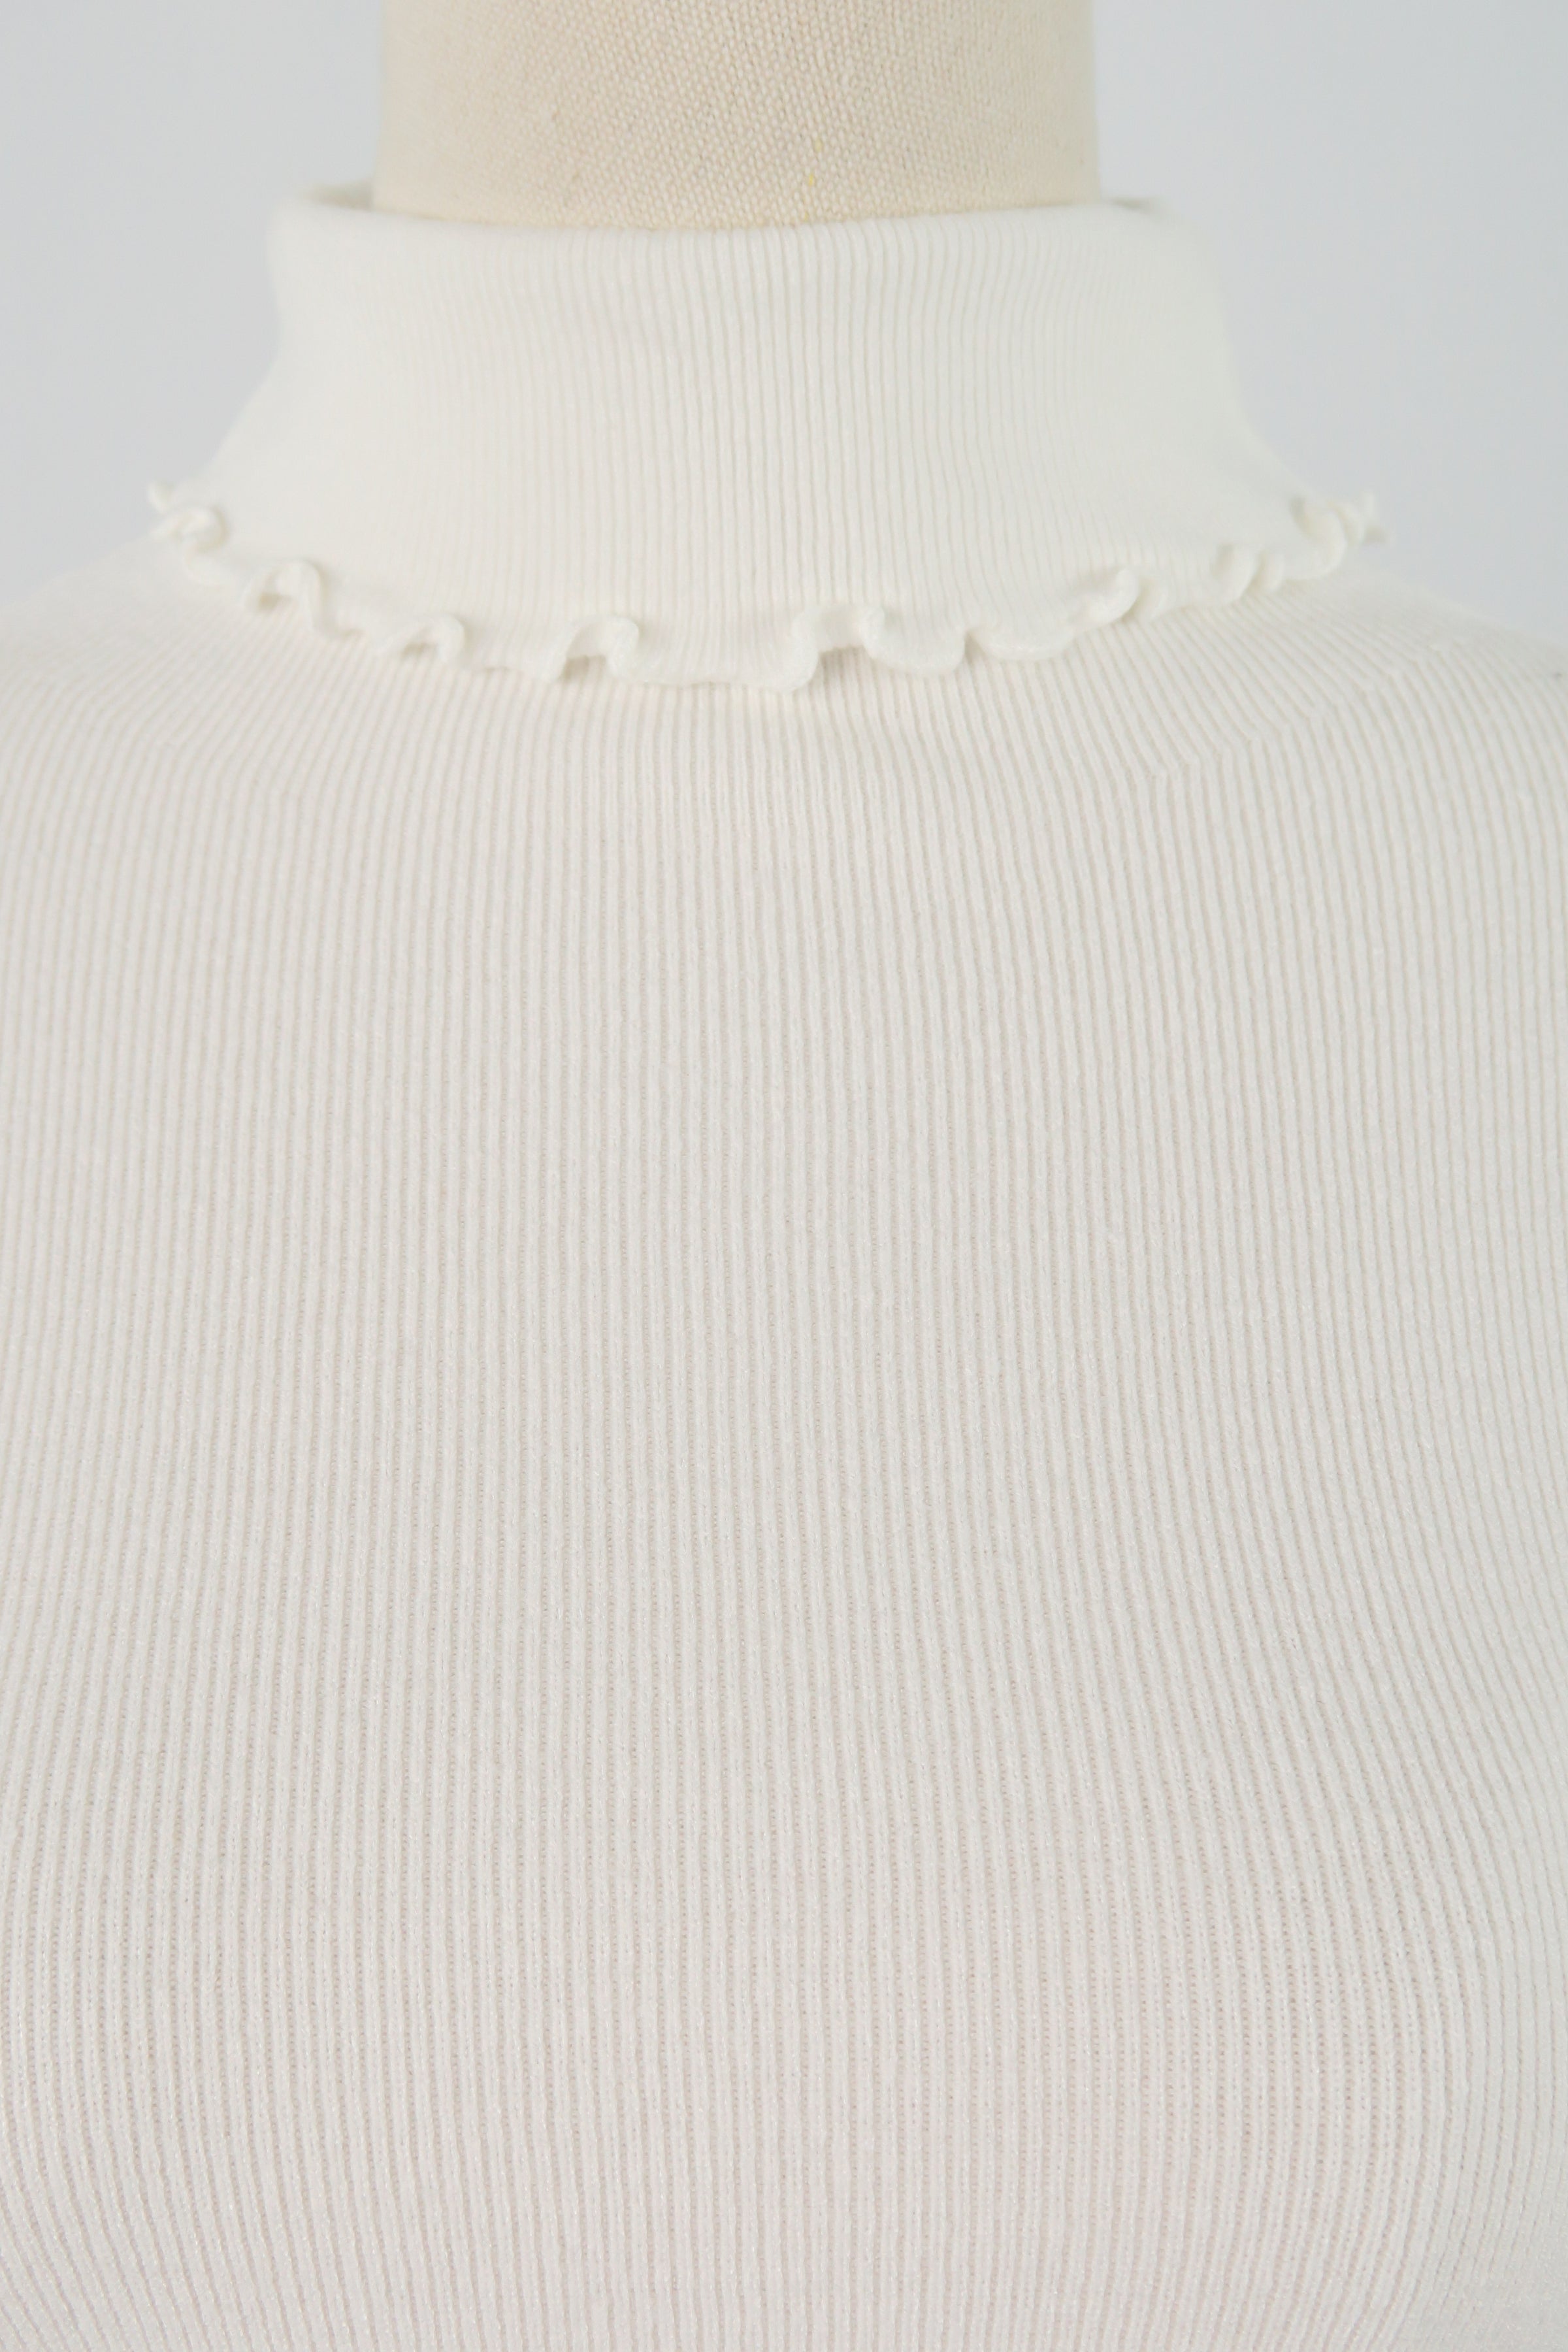 เสื้อไหมพรม เสื้อสเวตเตอร์ แขนยาว คอเต่า - Women's Basic Round Neck Side Split Loose Long Sleeve Knit Sweater